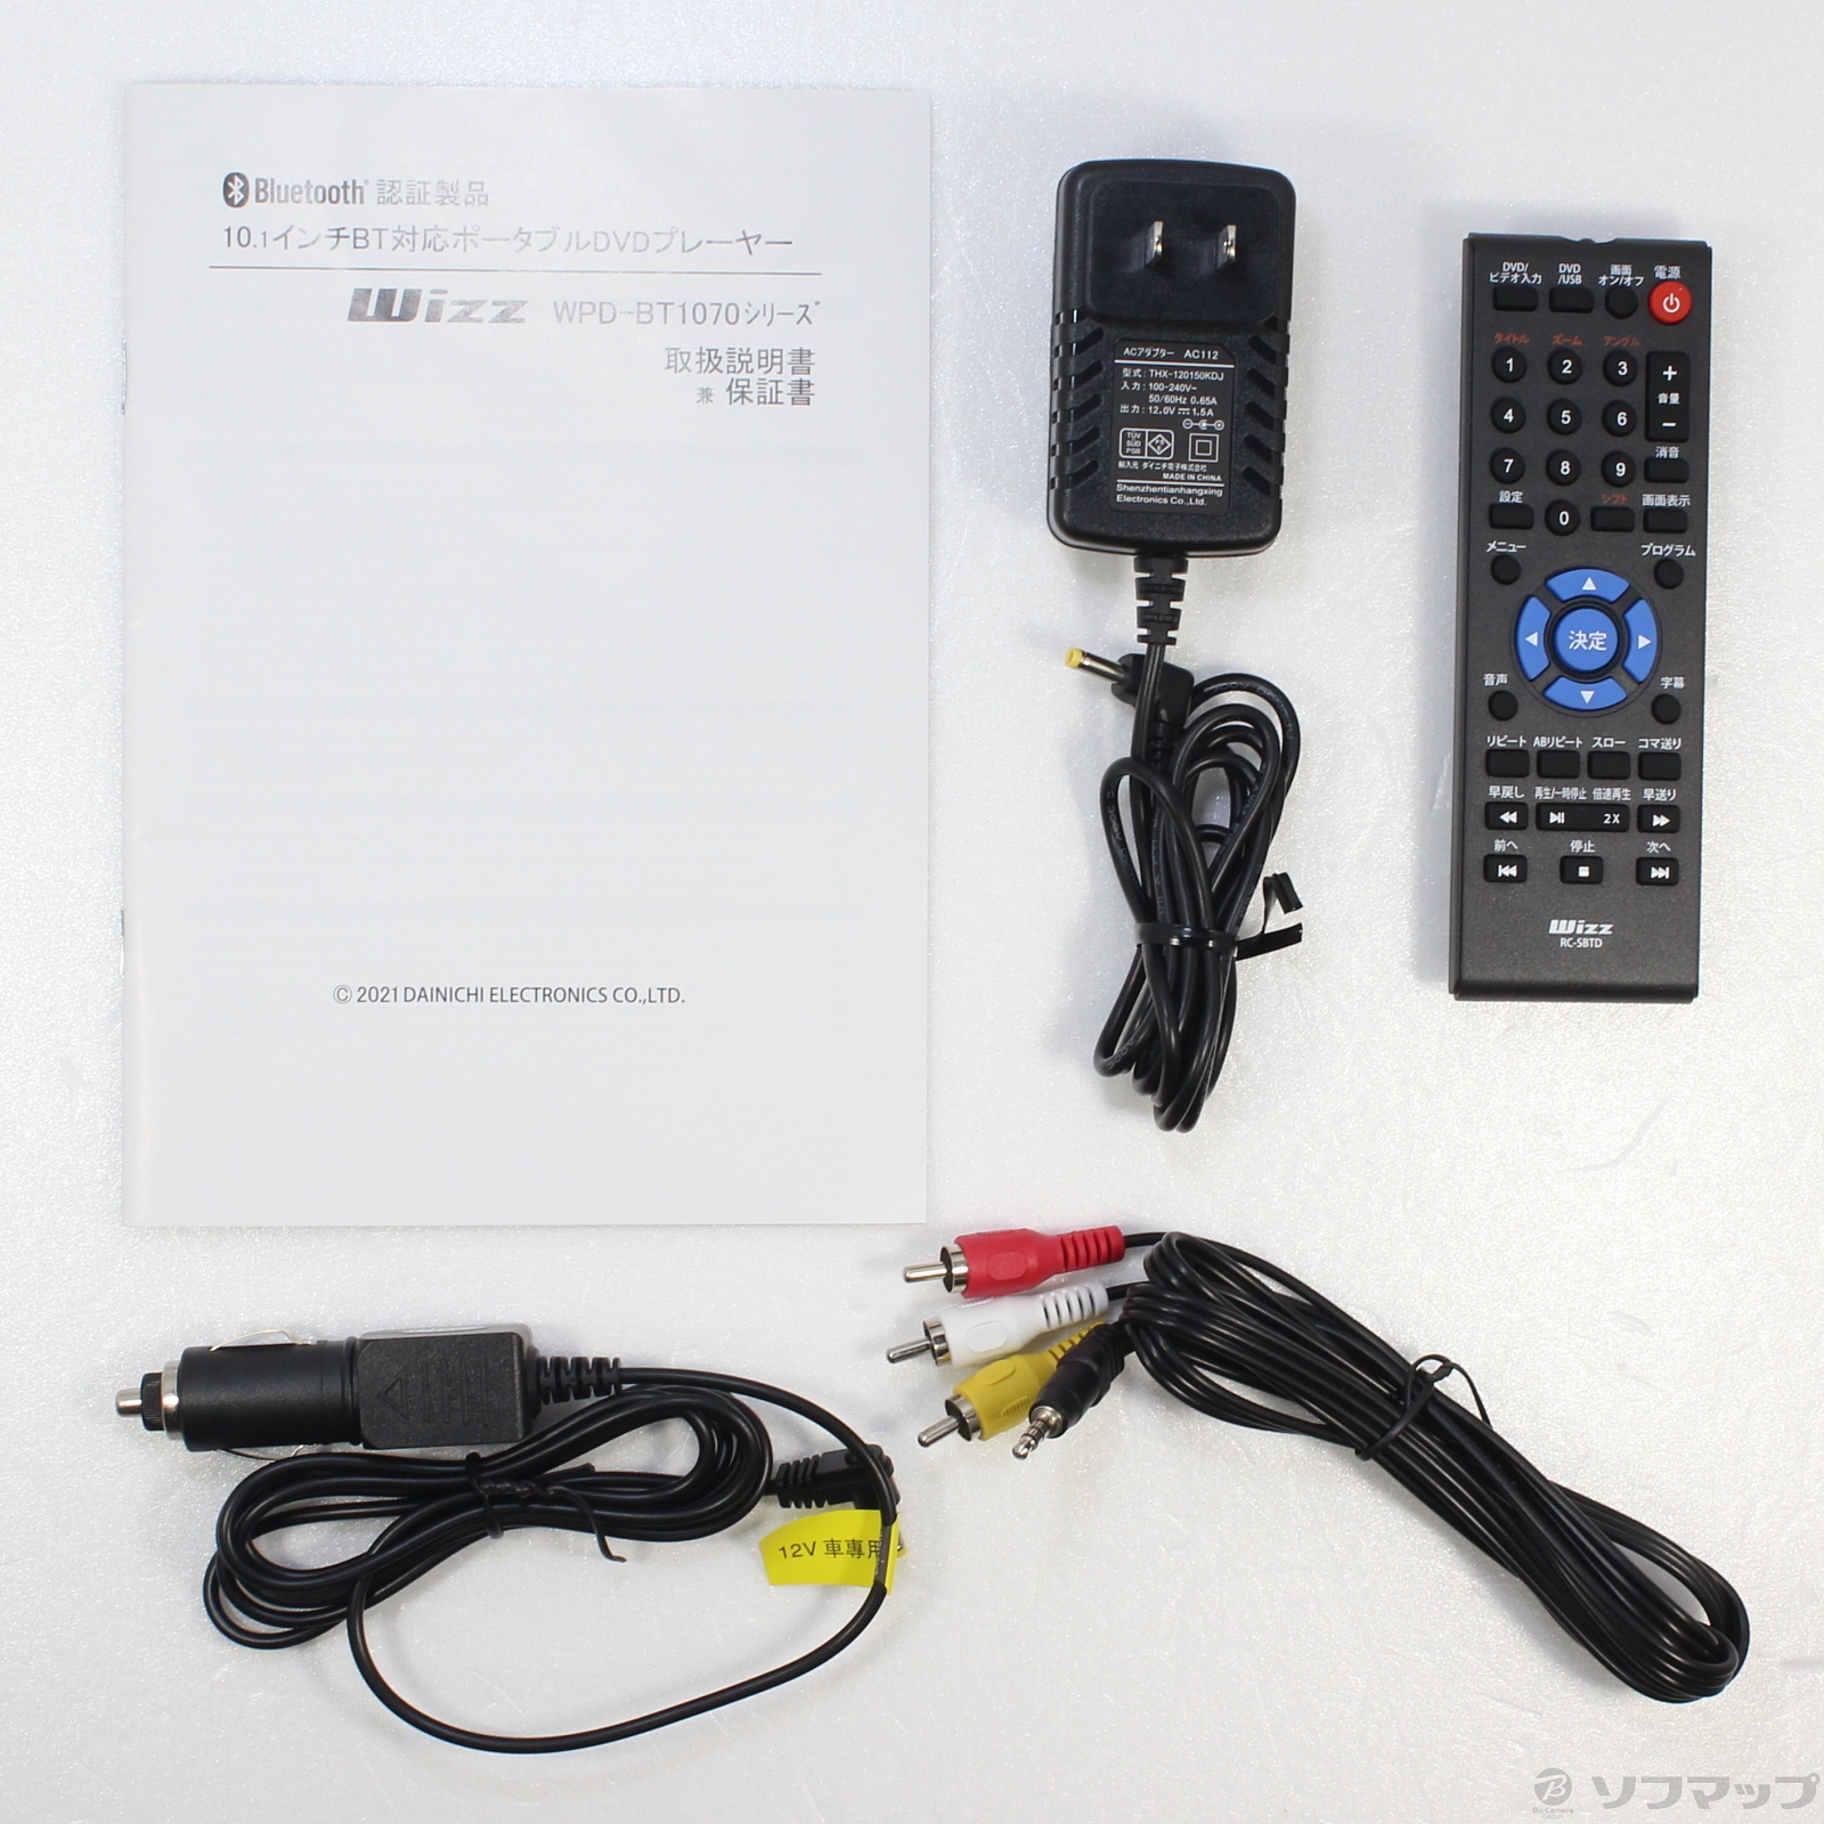 Bluetooth搭載 ポータブルDVDプレーヤー Wizz 10.1インチ - DVDプレーヤー